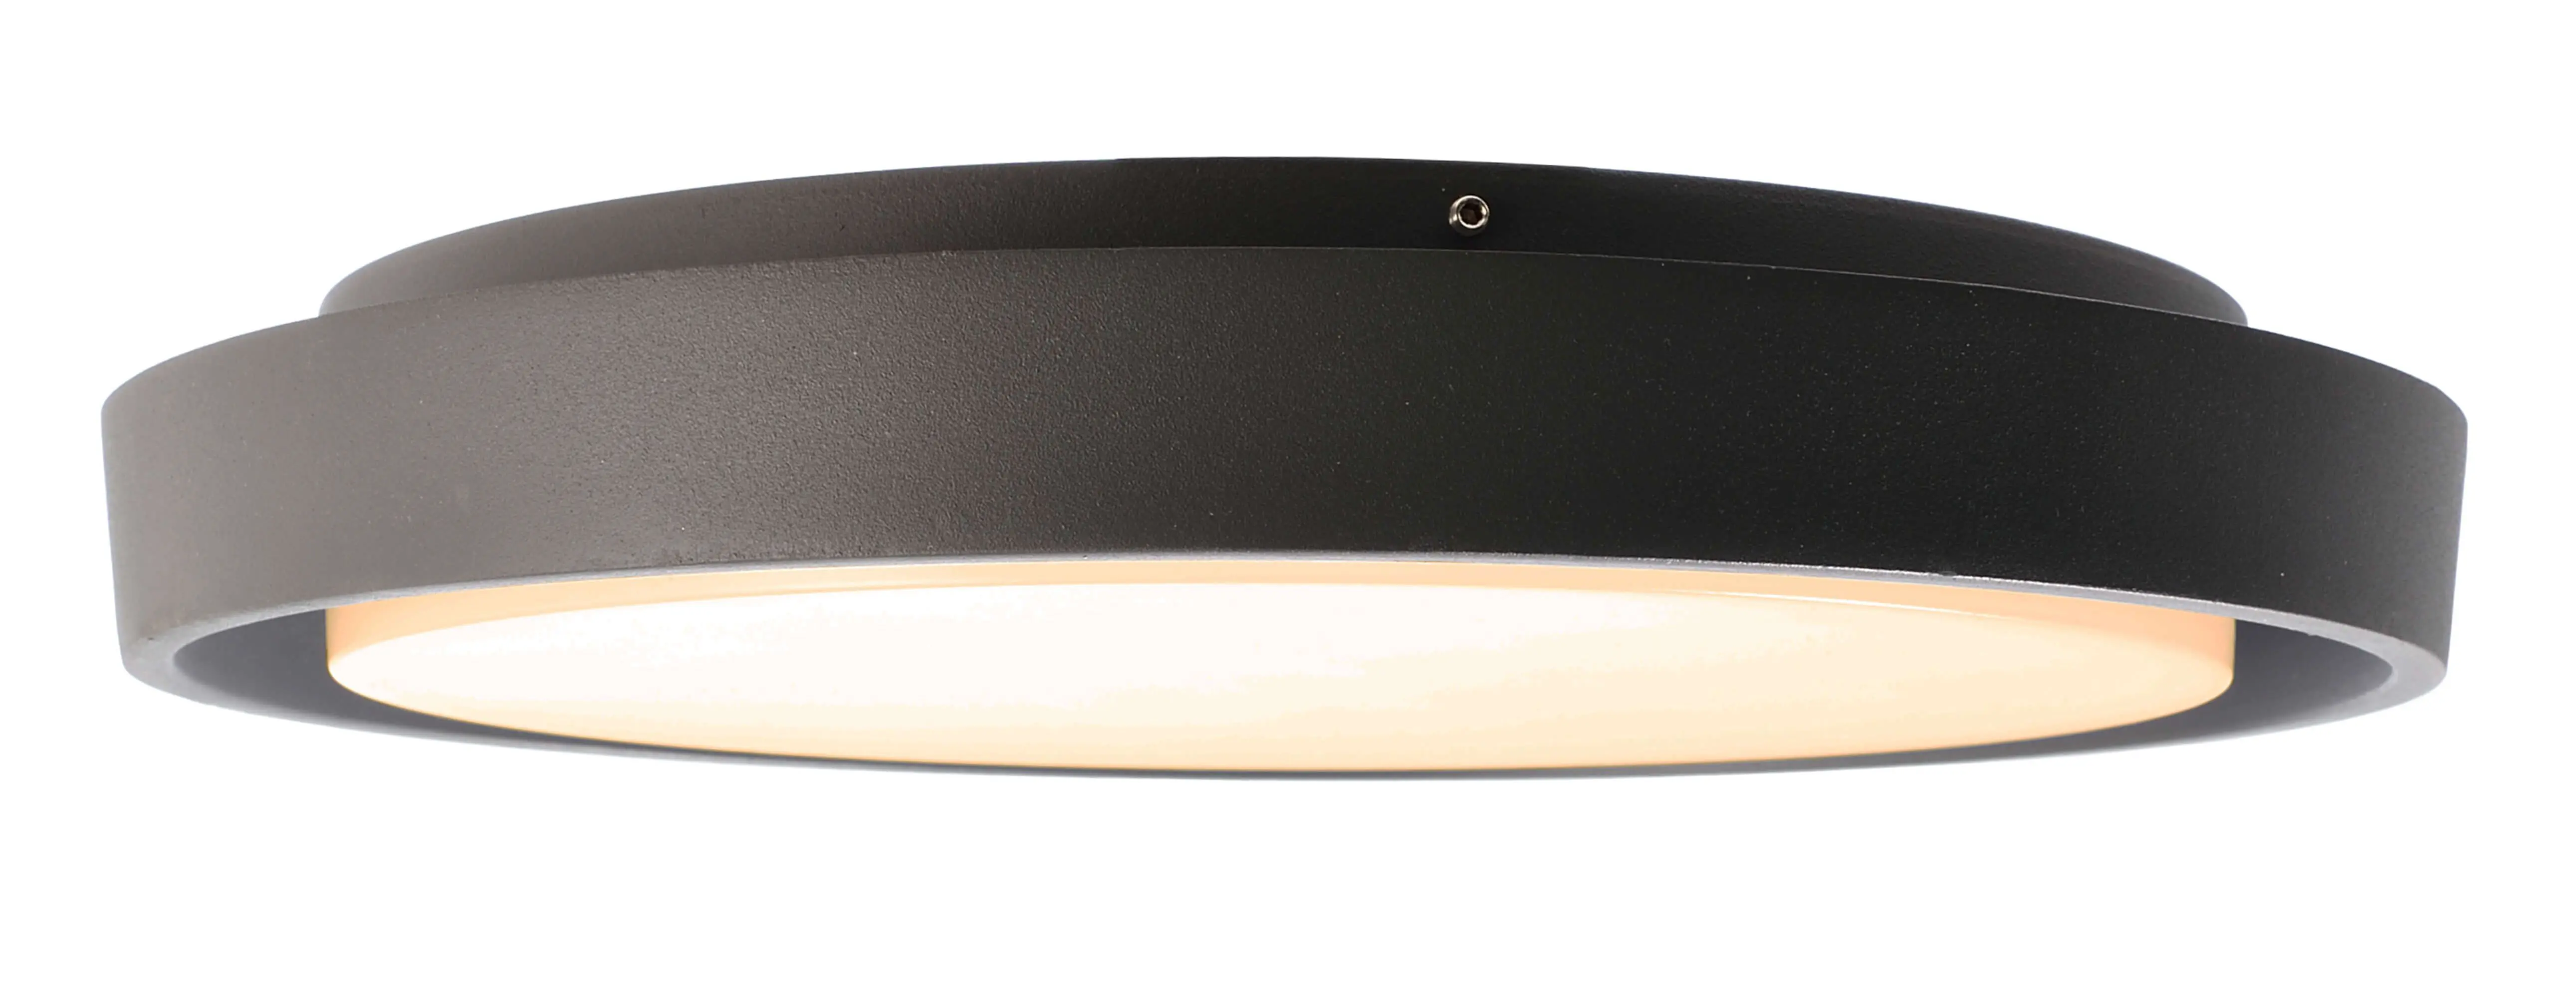 LED Deckenlampe außen Ascella Round, modernes Design